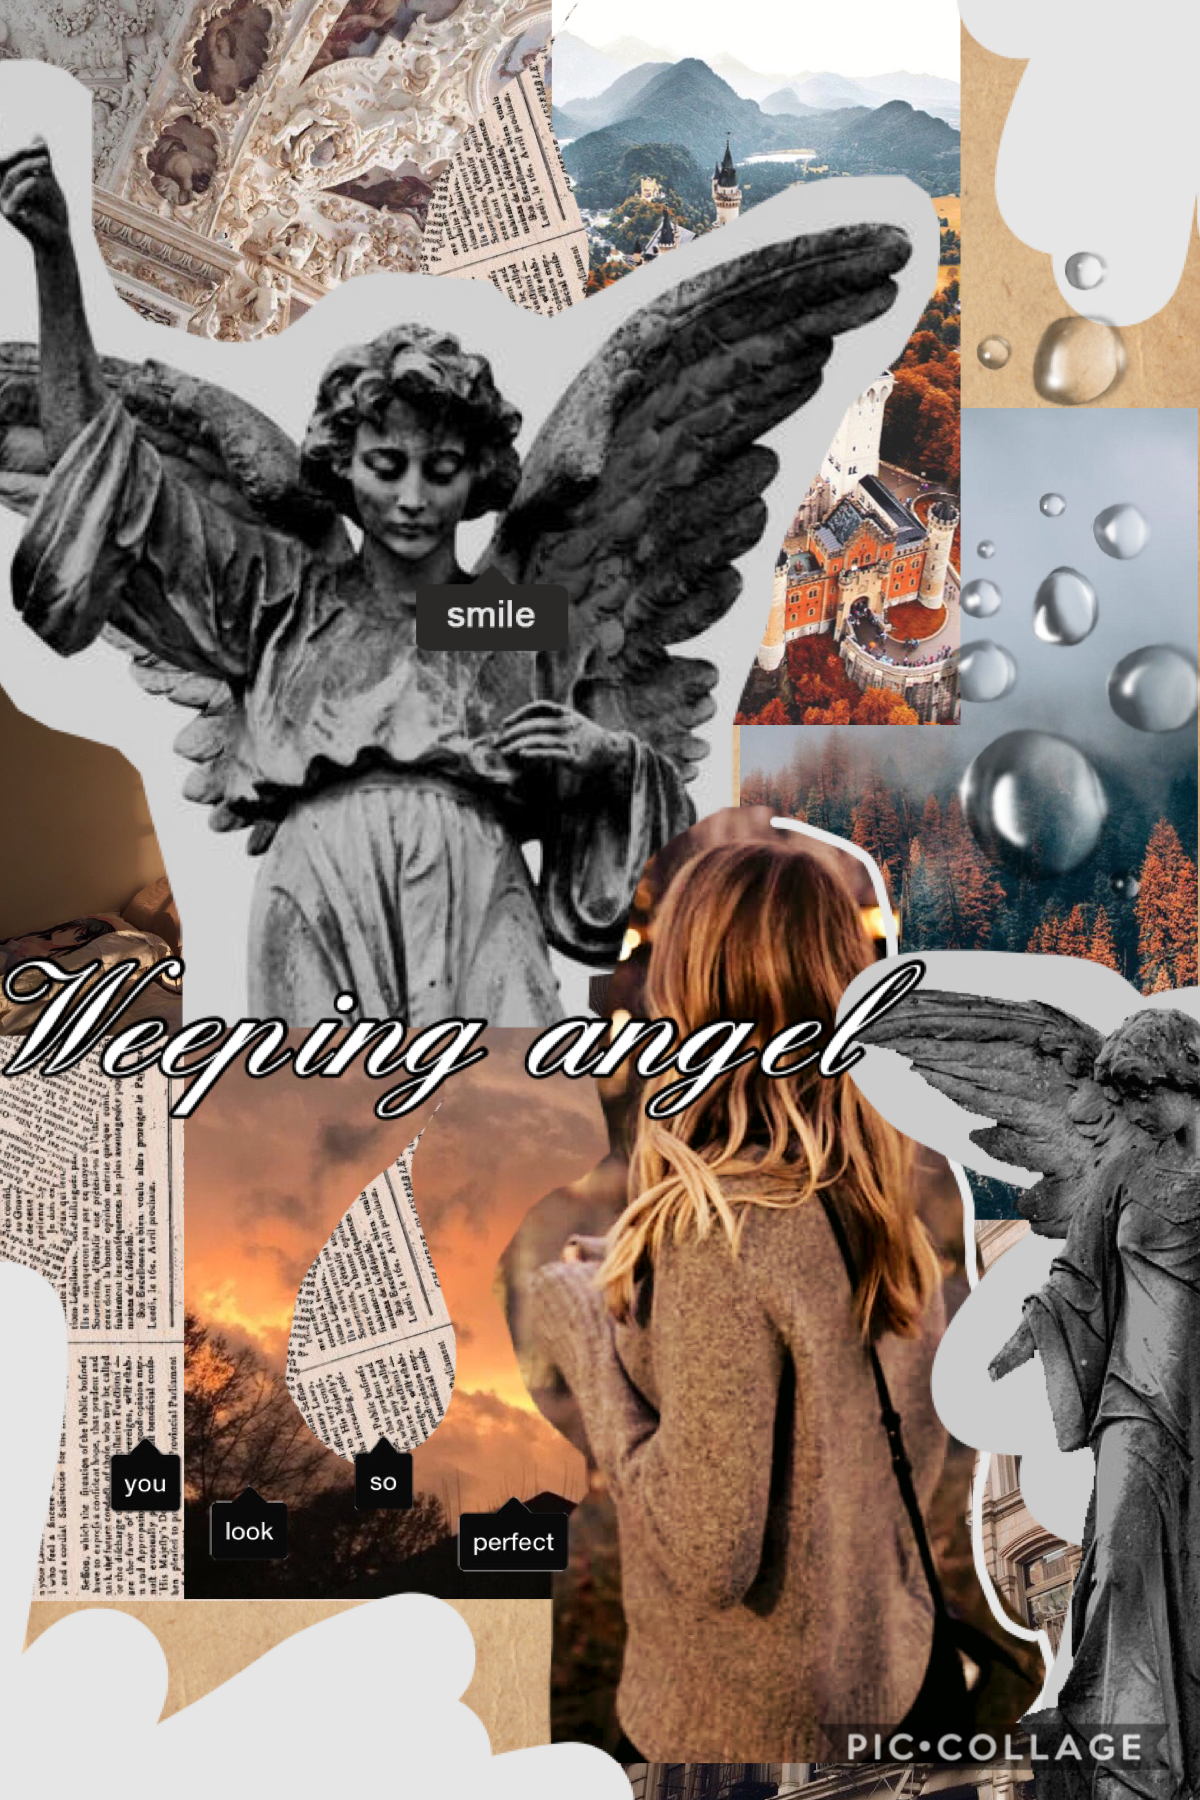 Weeping angel 😇 